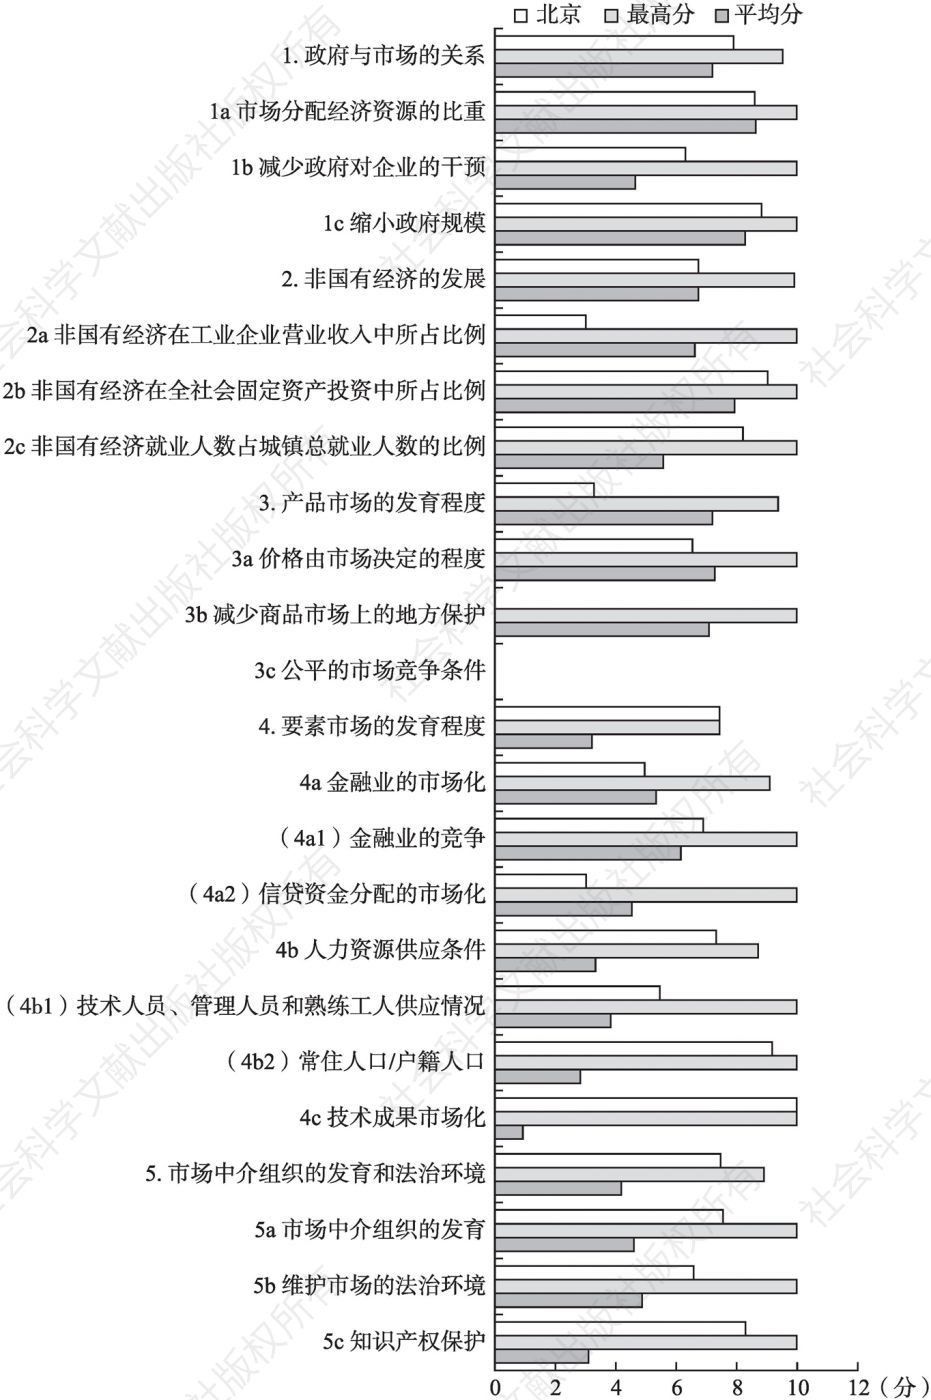 2016年北京市场化各方面指数和分项指数与全国最高分及平均分的比较